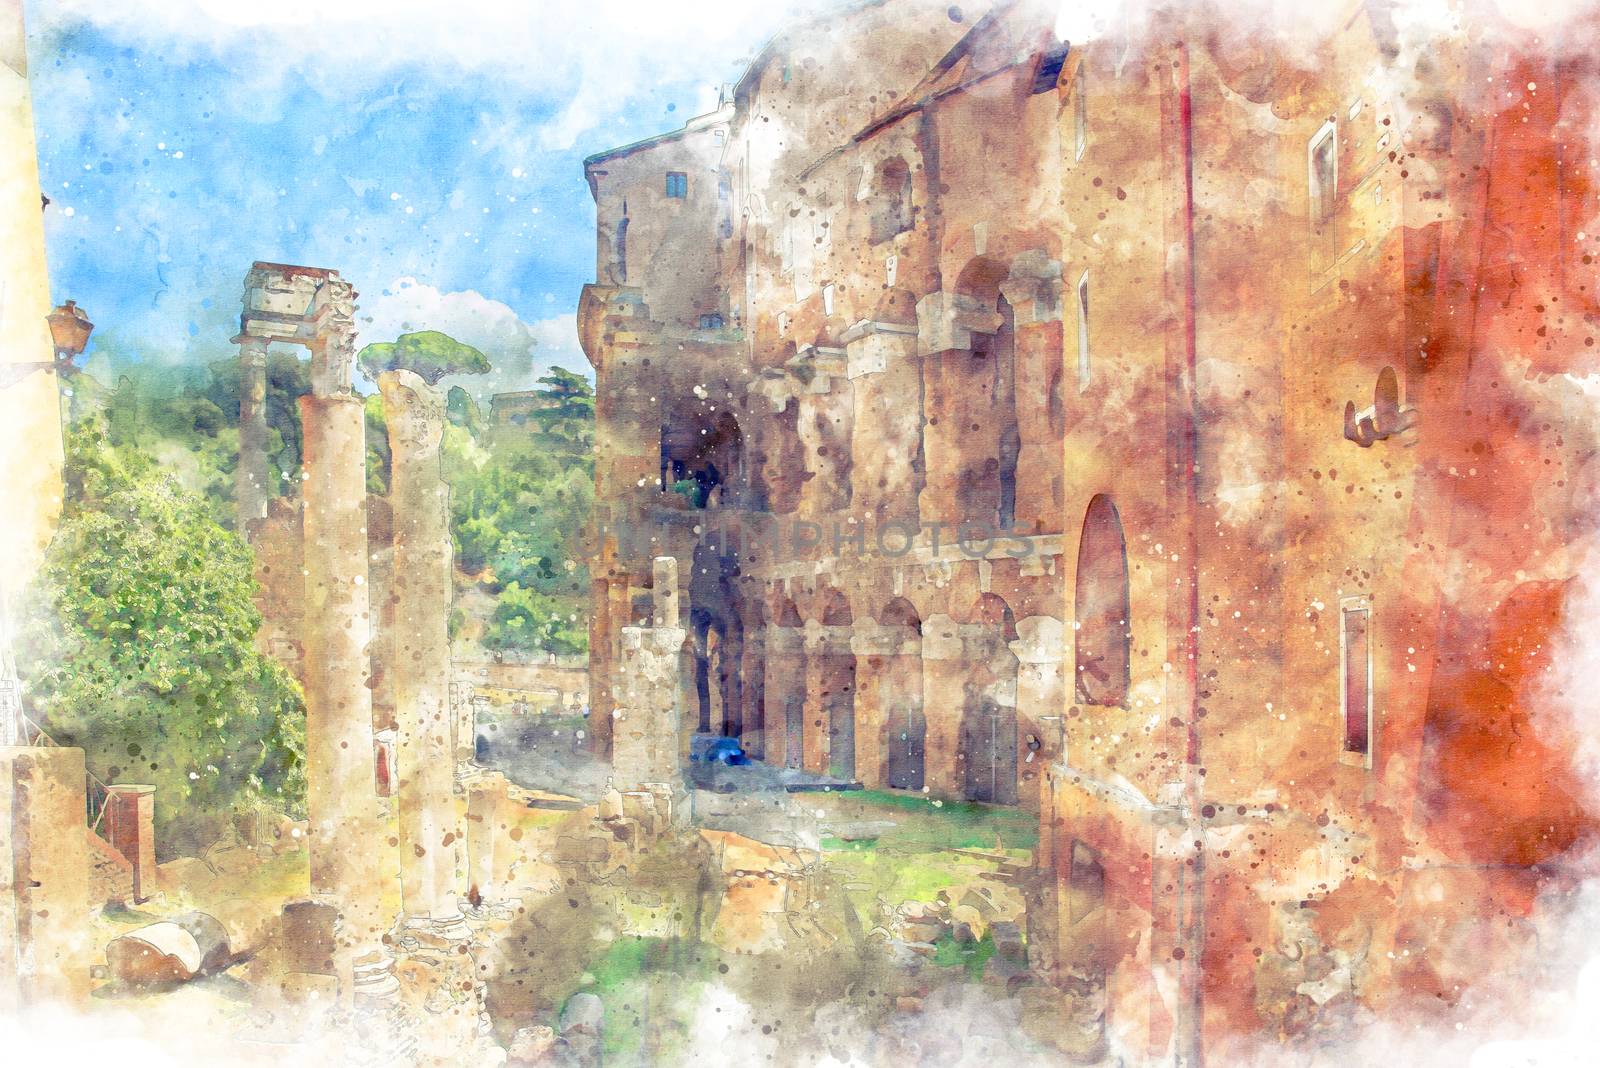 Digital illustration in watercolor style of Marcello Theater and Temple of Apollo Medicus Sosianus, view from Via del Teatro di Marcello, Rome, Italy